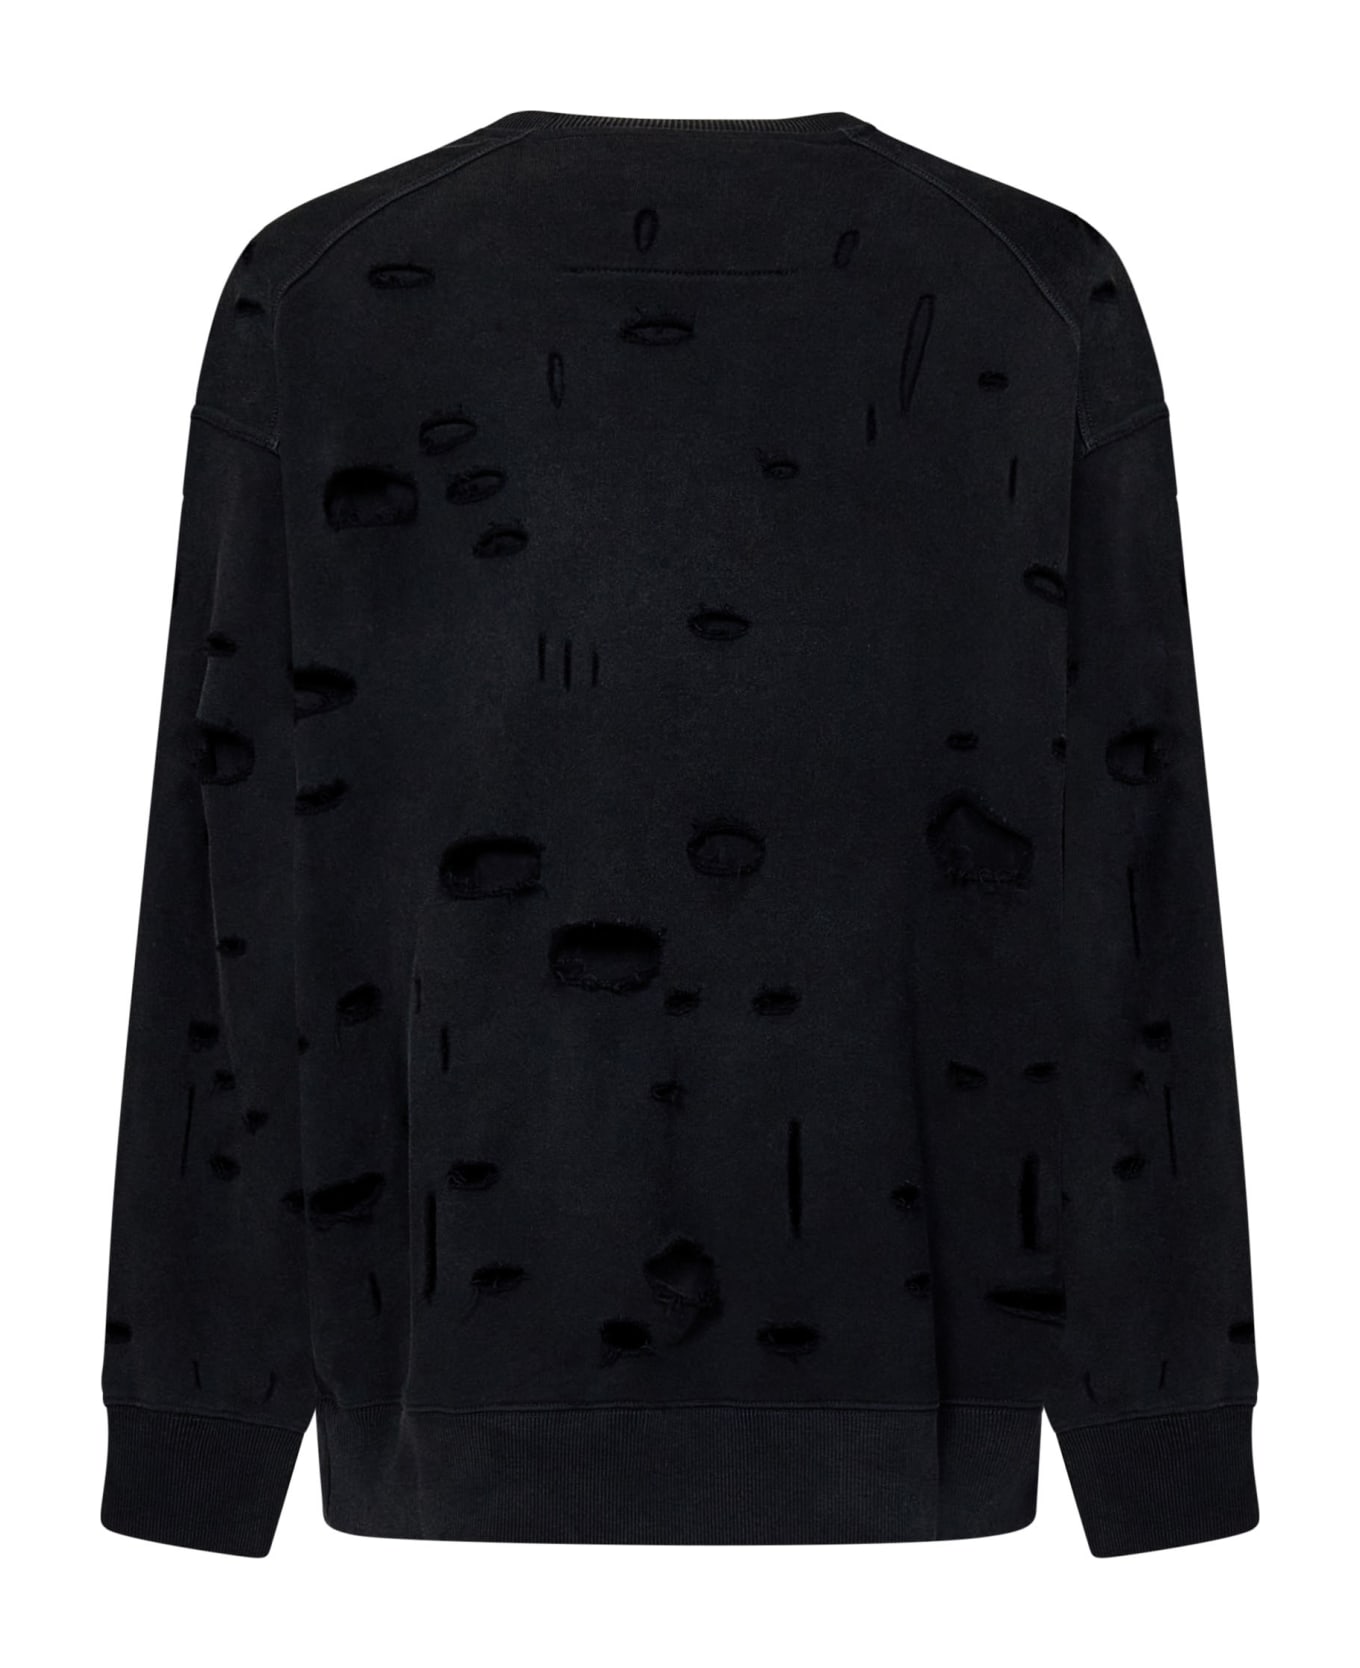 Givenchy Oversized Holes Sweatshirt - Black